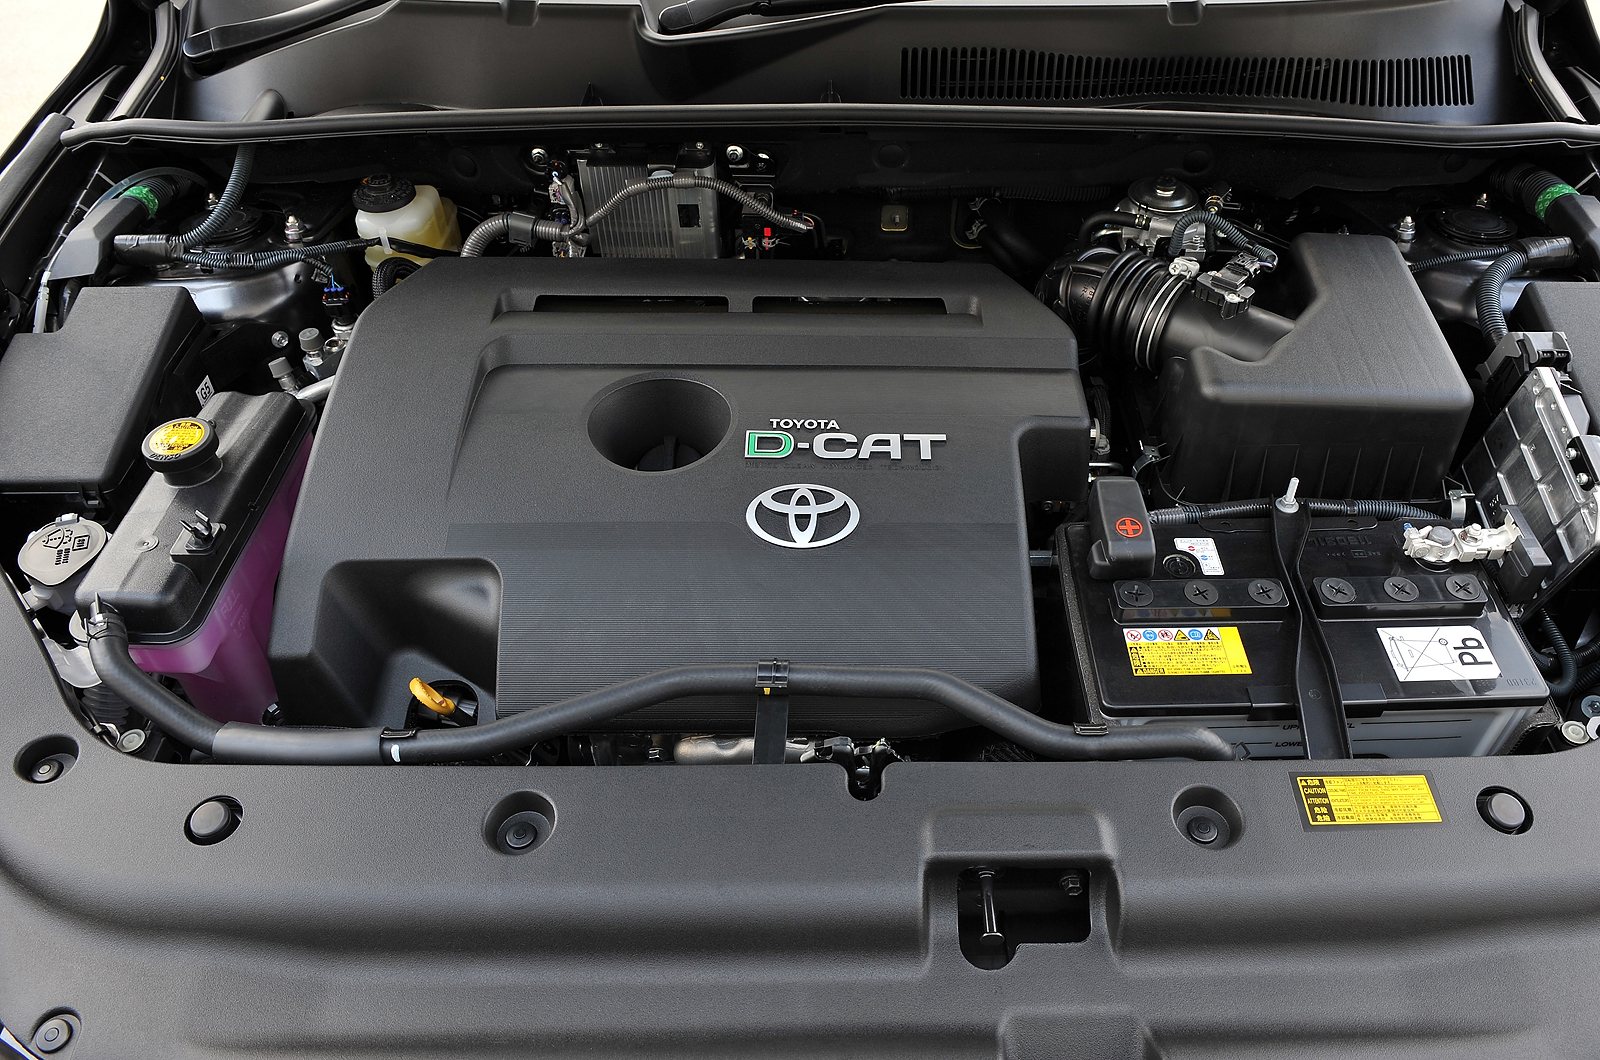 2.2-litre Toyota RAV4 diesel engine